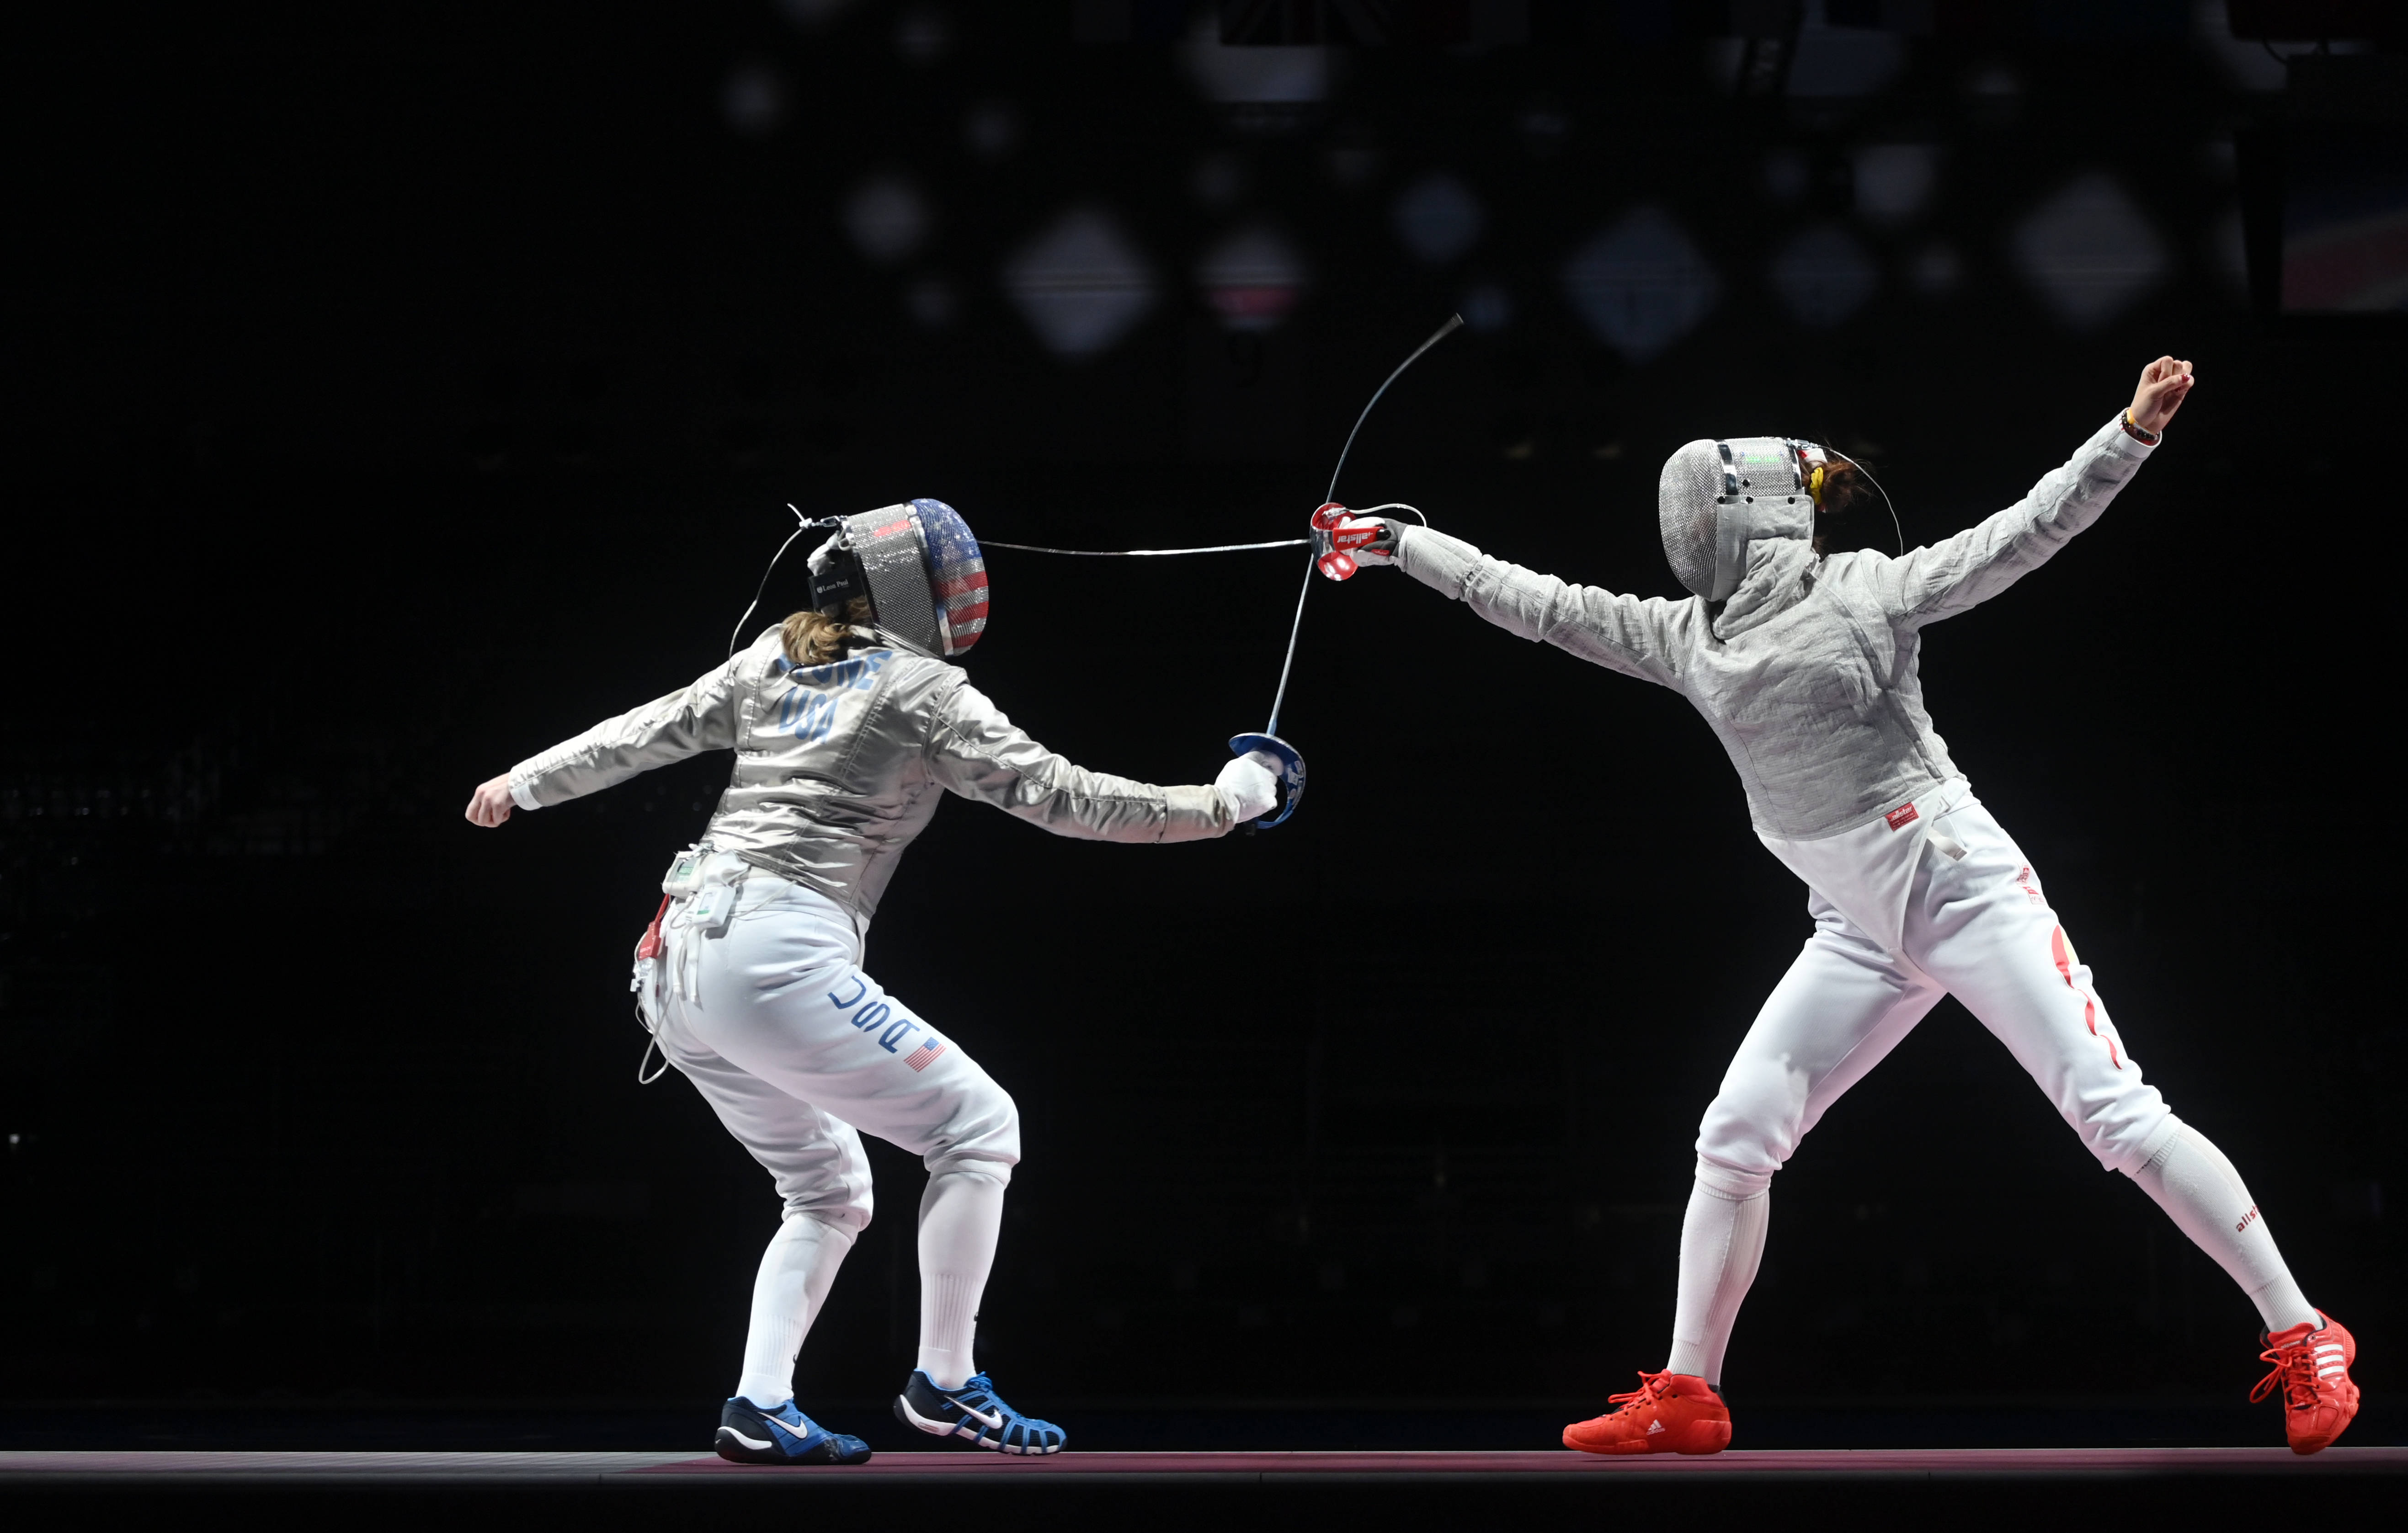 奥运会比赛照片击剑图片